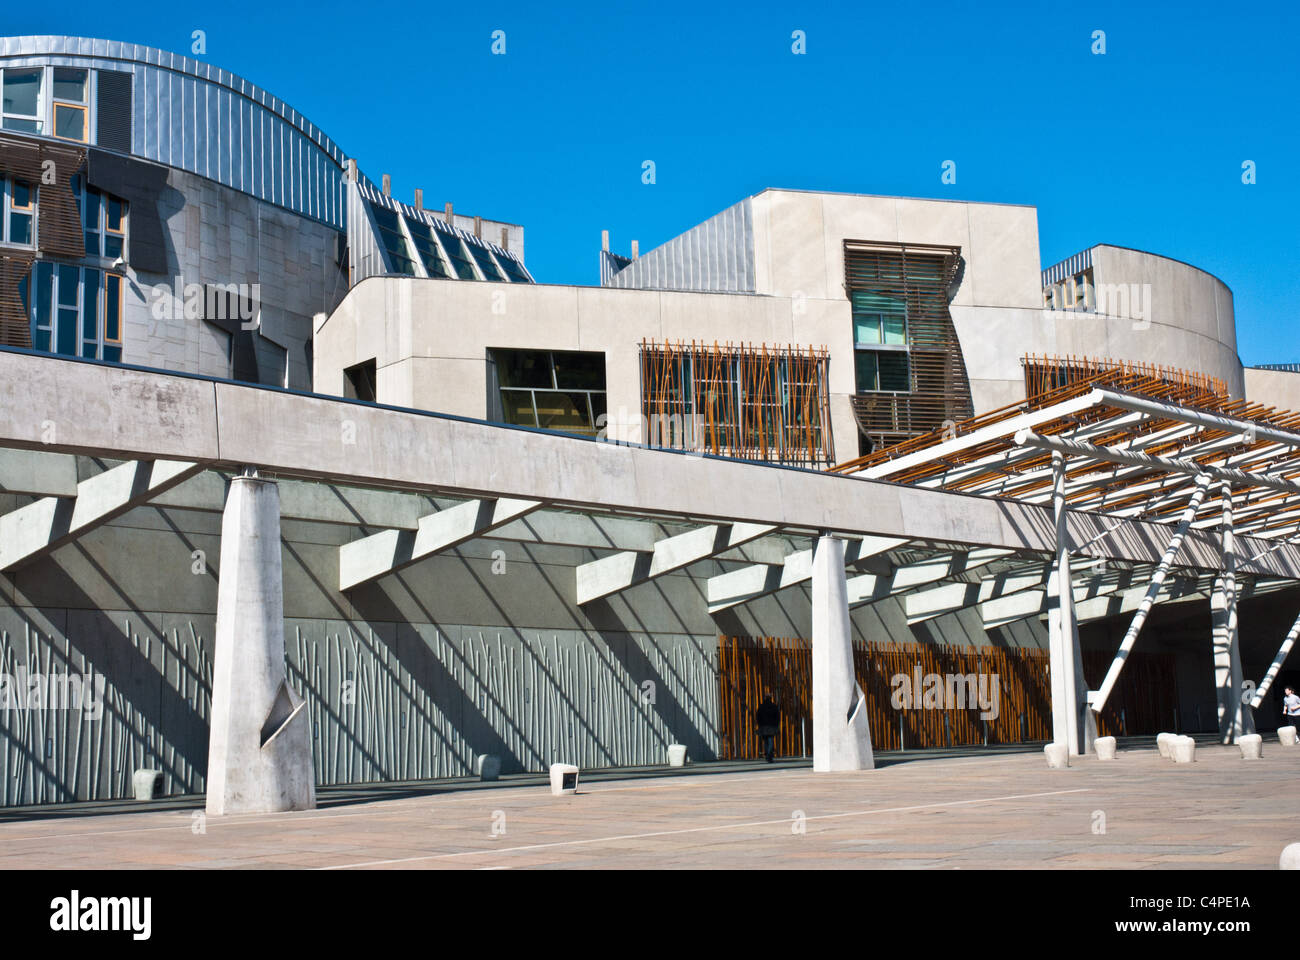 Le parlement écossais, Edimbourg. frappant et une architecture novatrice pour un délégué de l'Écosse. des couleurs vives et un ciel bleu clair. Banque D'Images